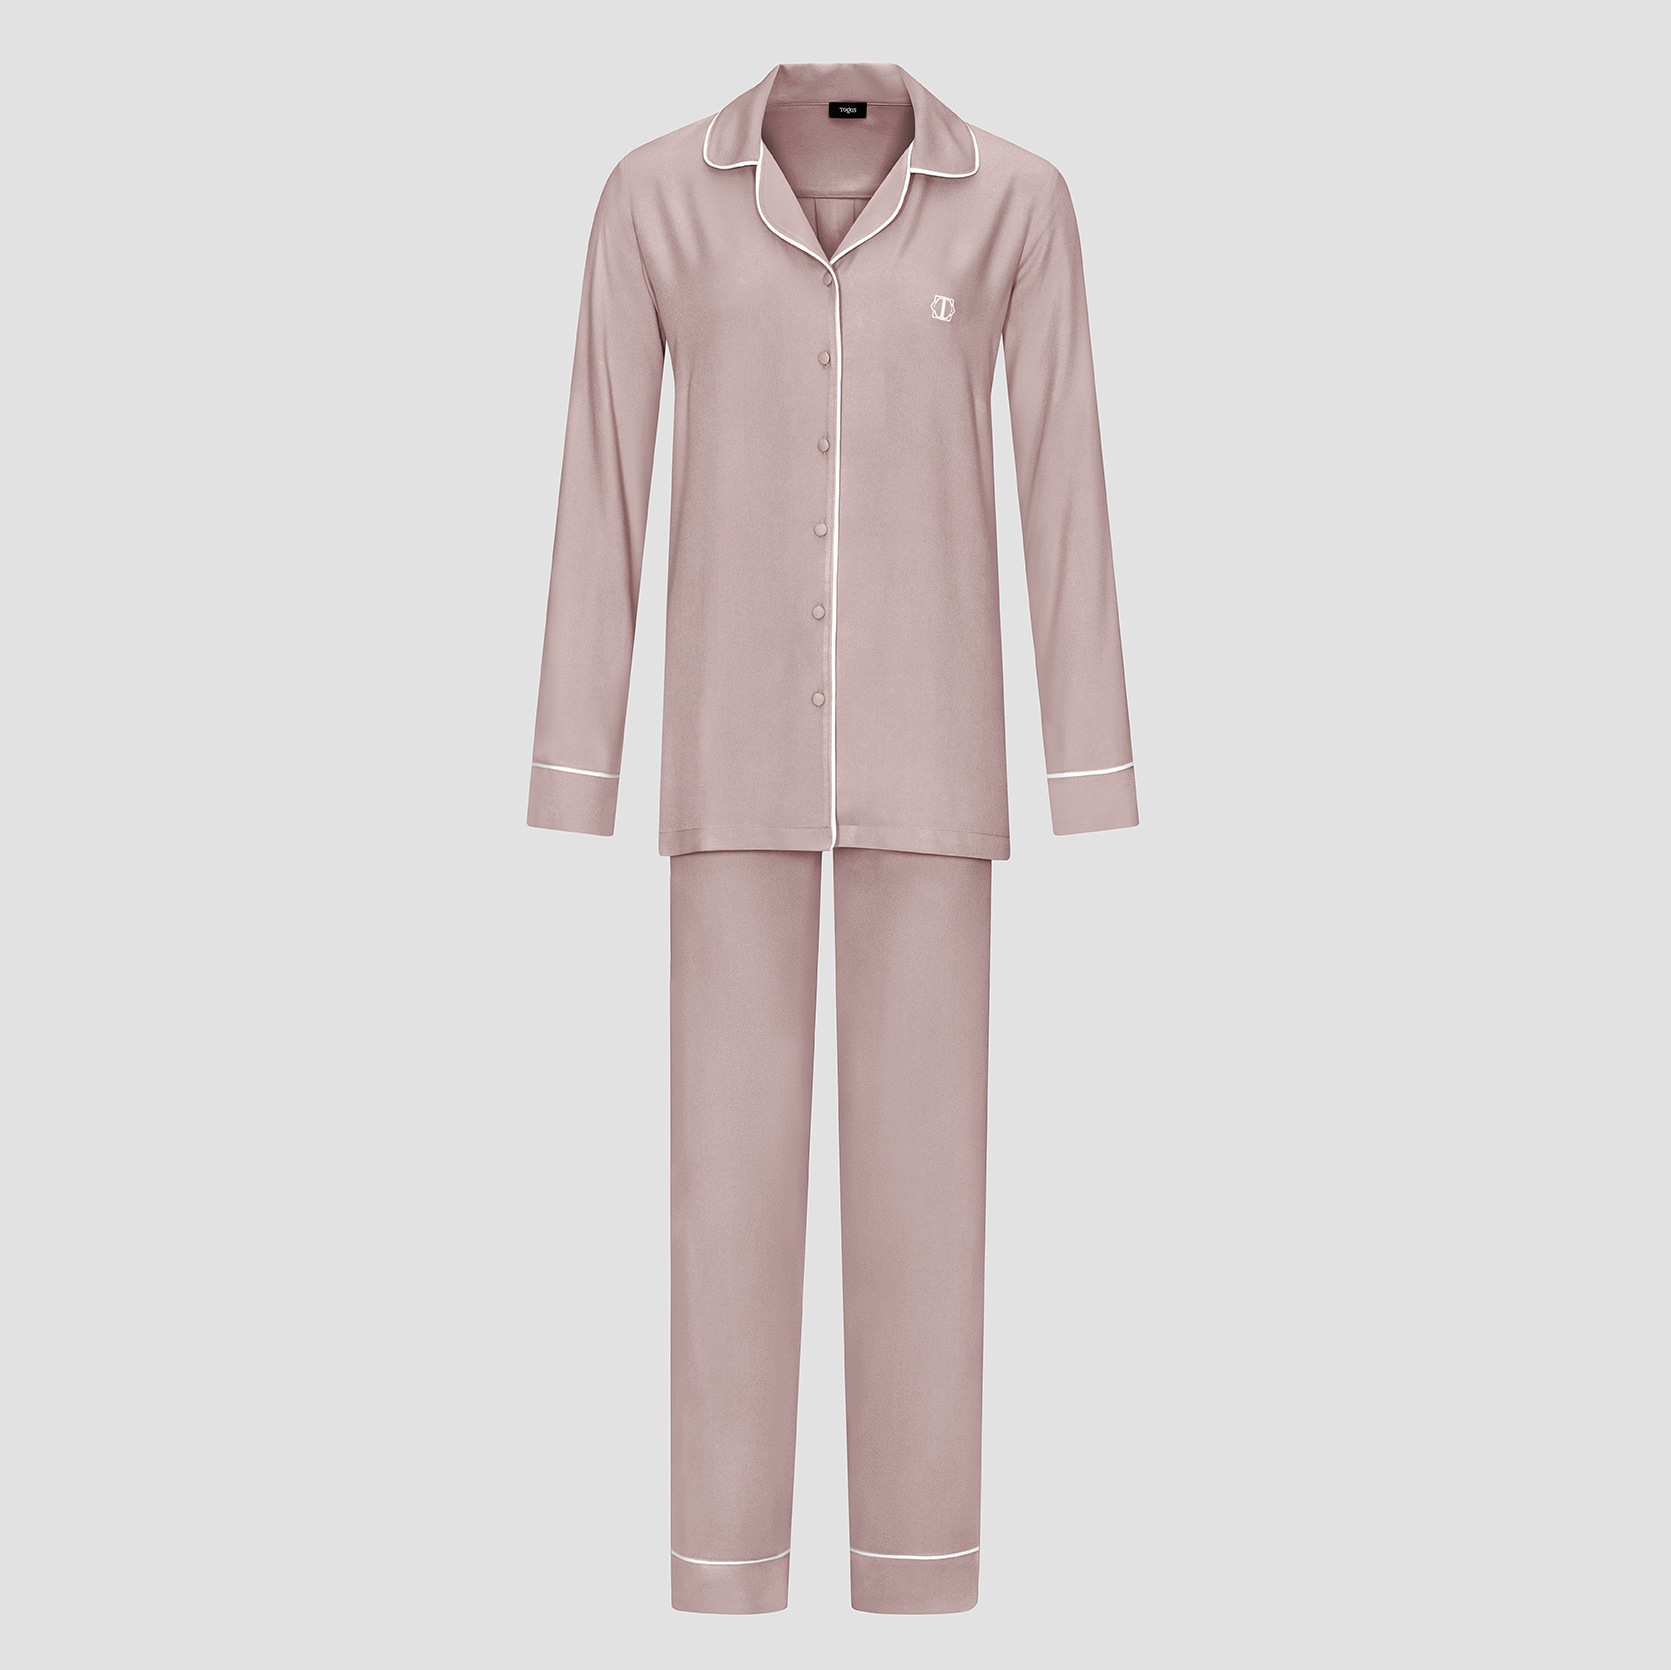 Пижама женская Togas Рамель розовая 2 предмета муж пижама вояж синий р 48